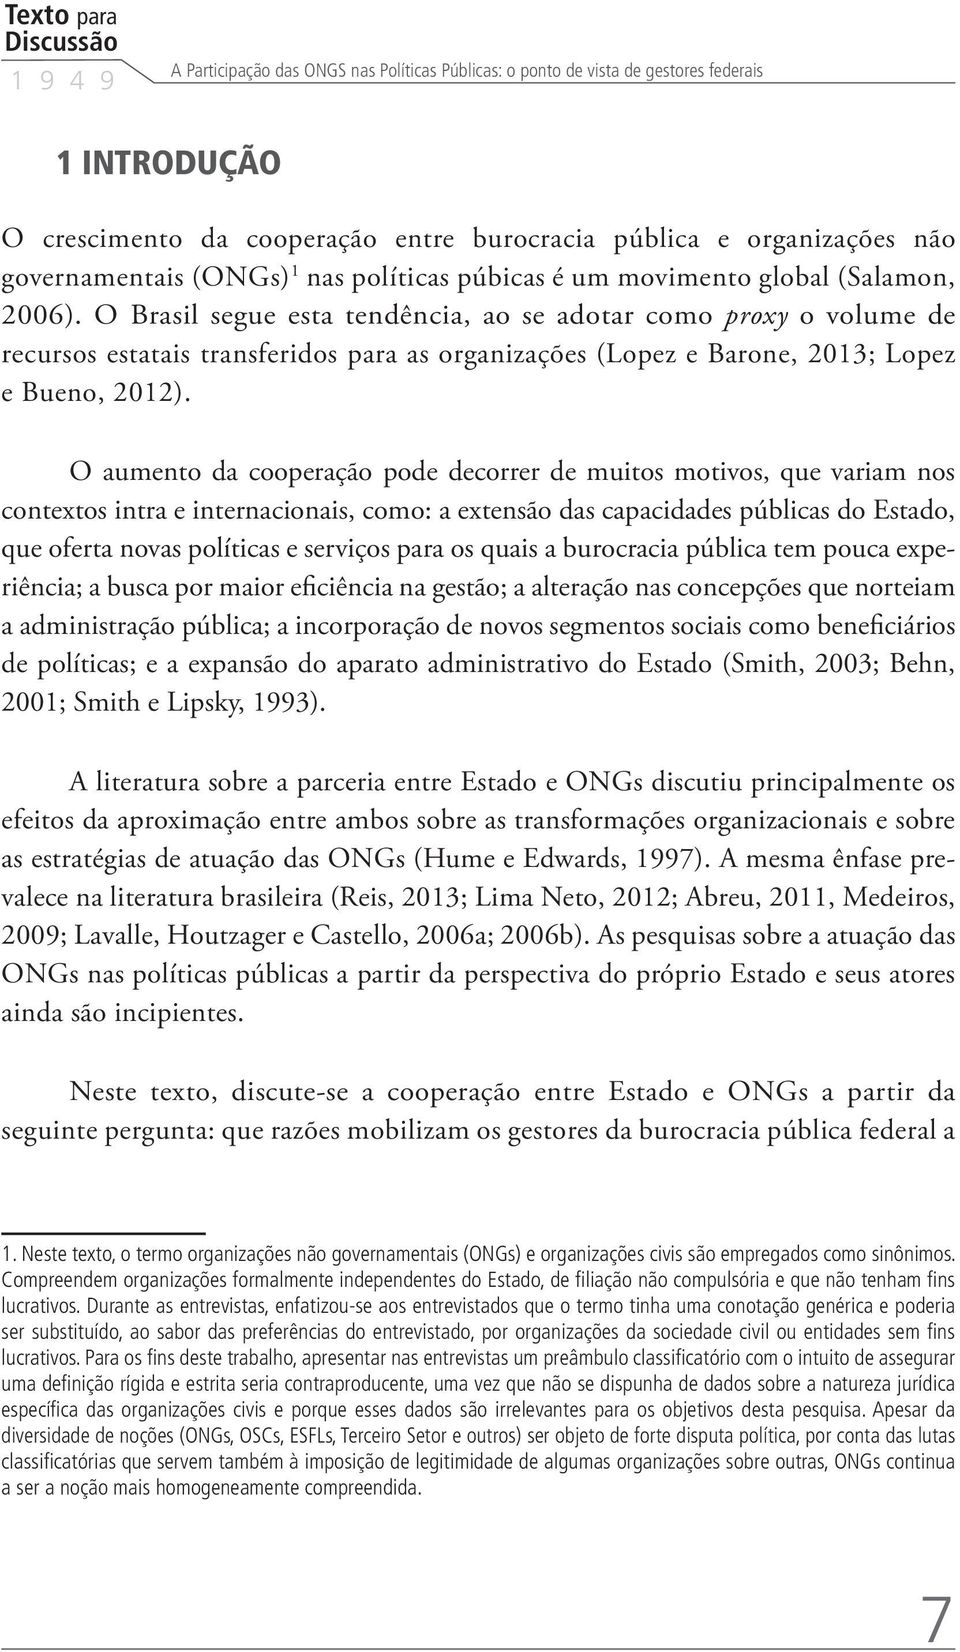 O Brasil segue esta tendência, ao se adotar como proxy o volume de recursos estatais transferidos para as organizações (Lopez e Barone, 2013; Lopez e Bueno, 2012).